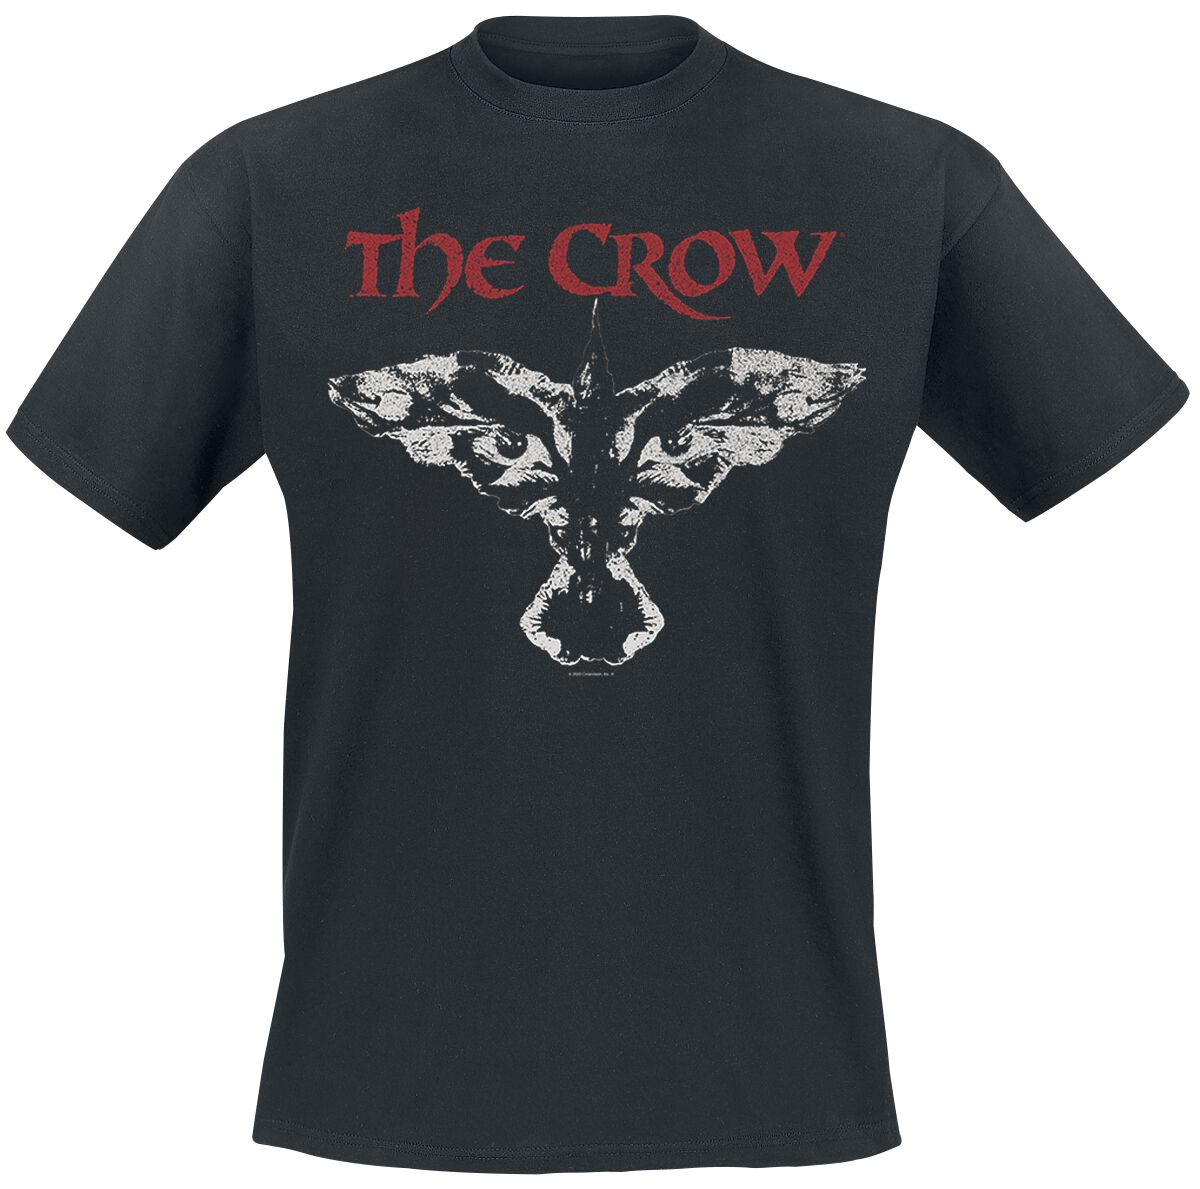 the crow movie symbol